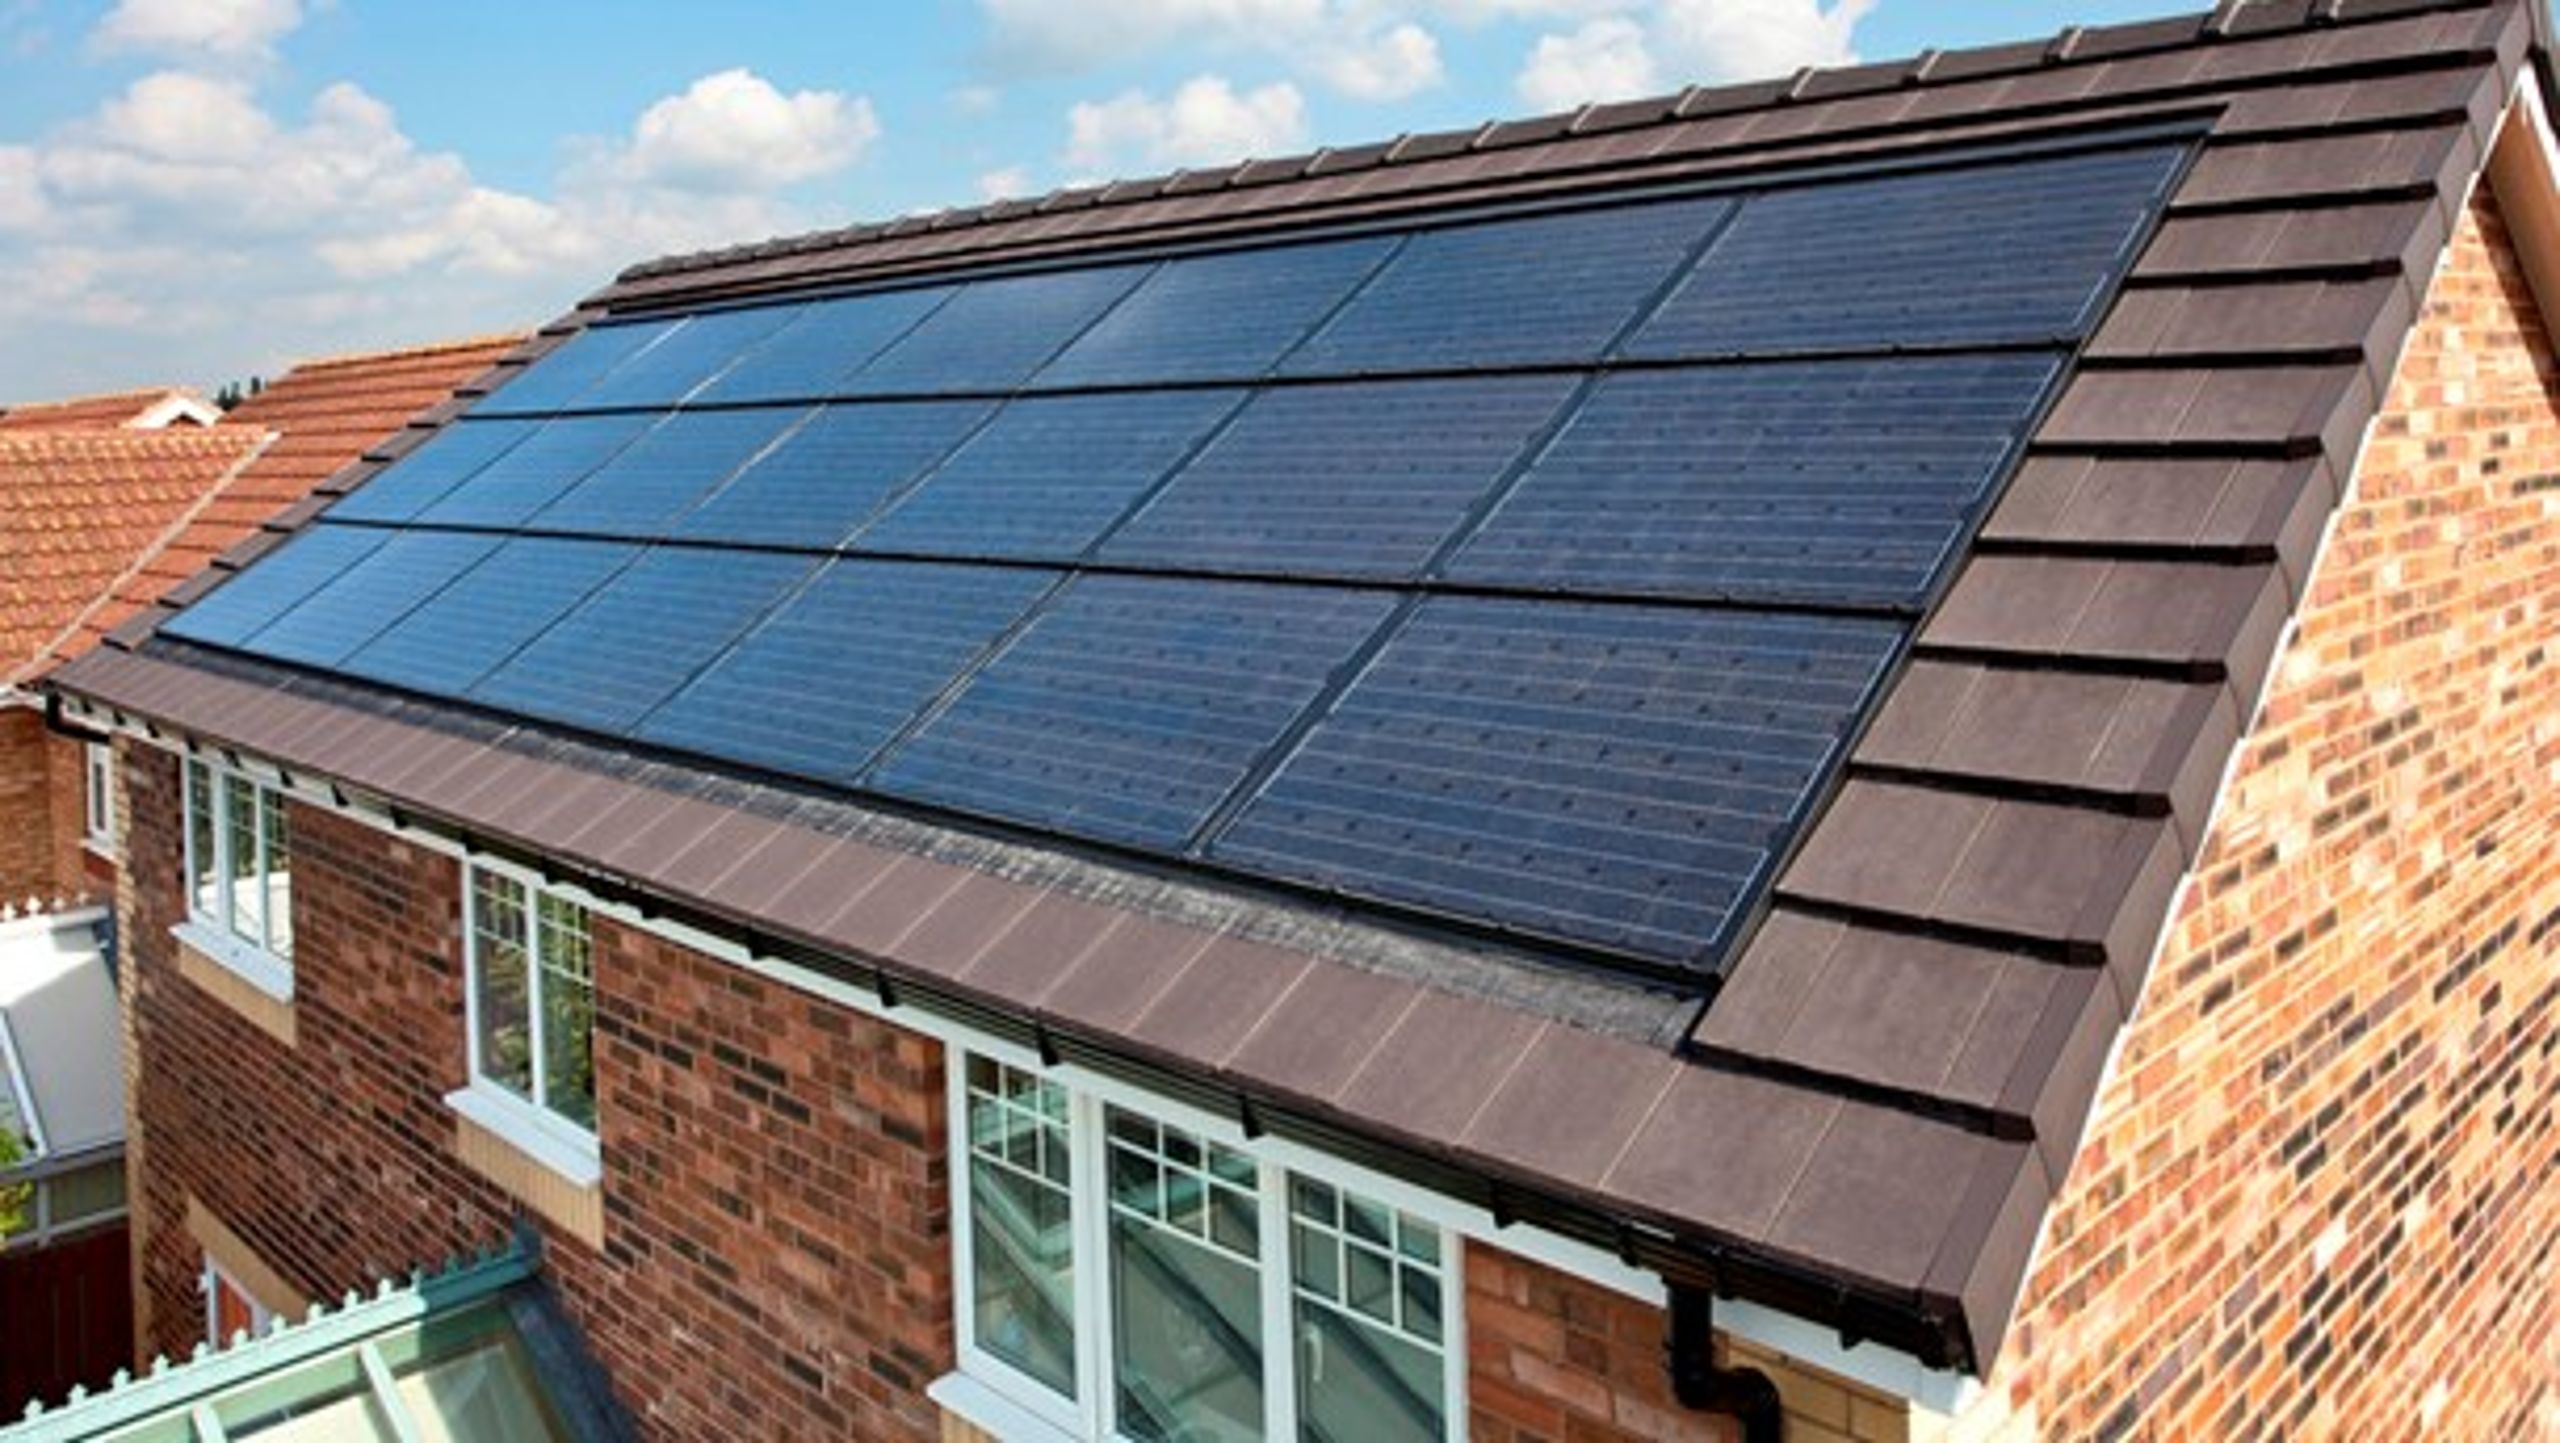 Skal billigere solceller være en del af den grønne omstilling i bygge- og boligbranchen? Det er et af de spørgsmål, Altinget By og bolig sætter fokus på de kommende uger.